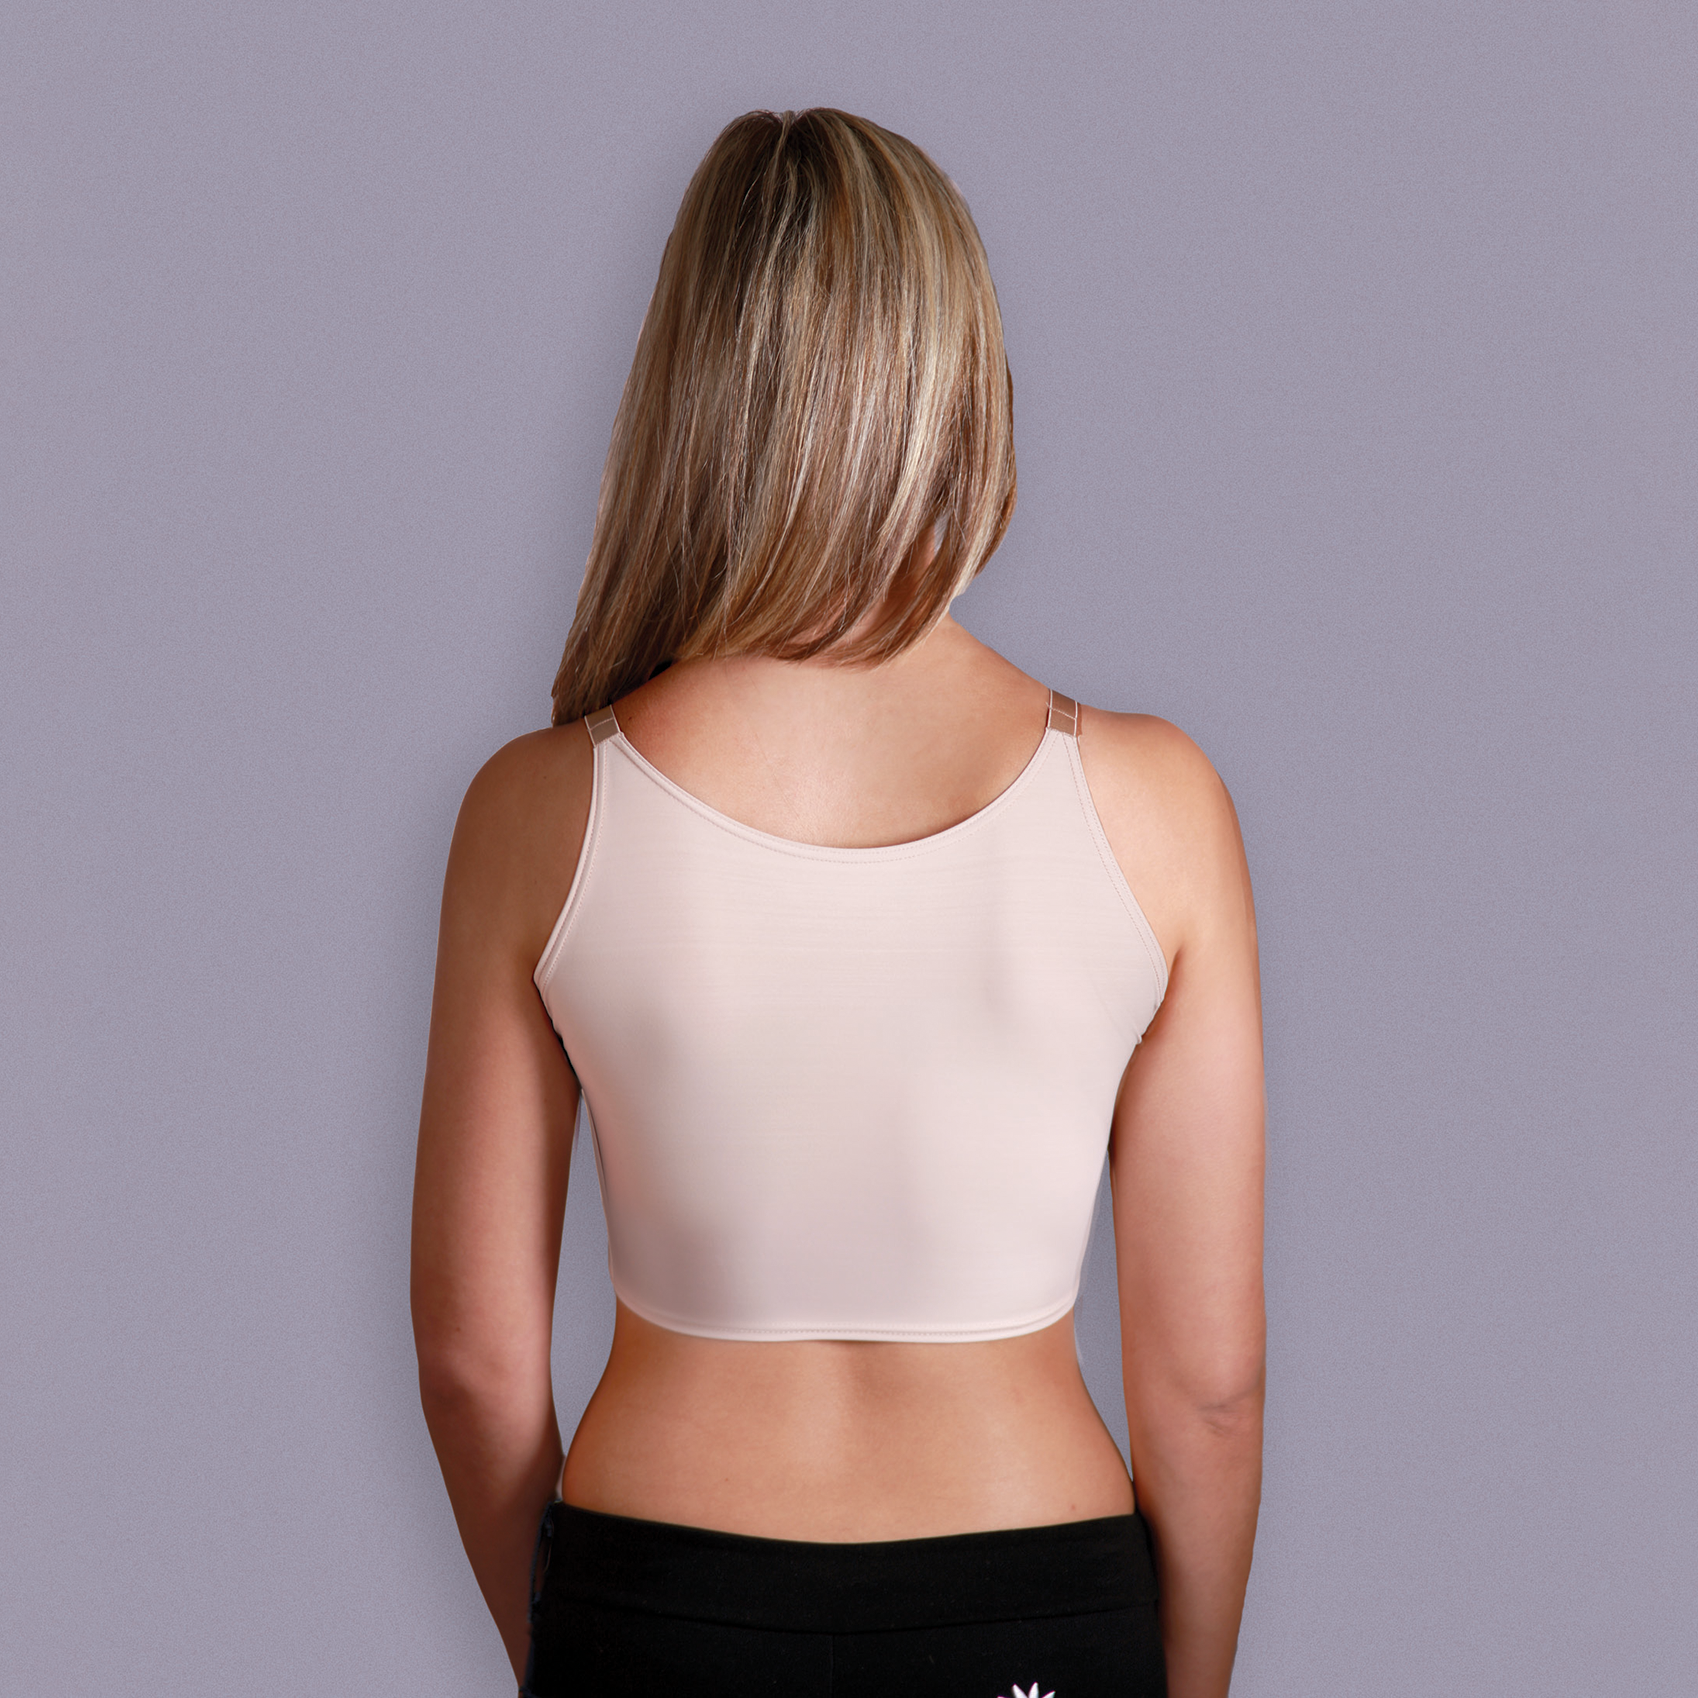 Shapeez Women's Shortee Comfortable Back Smoothing Bra, Adjustable